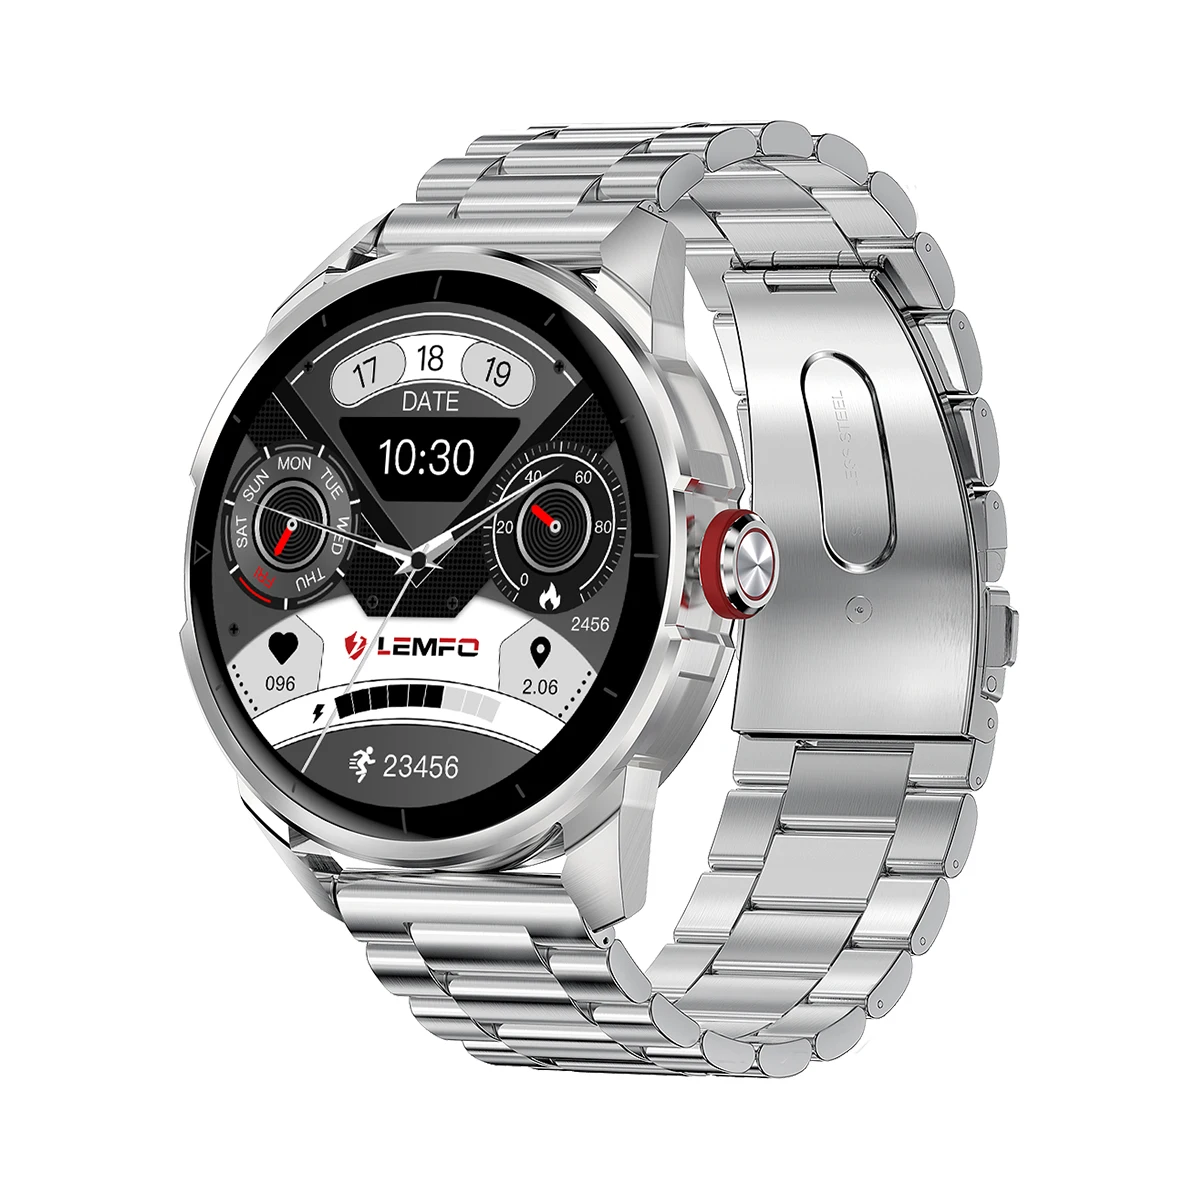 

LF26Pro silver men smartwatch latest steel Strap Multiple sport mode Blood Pressure Health Monitor smart Watch men watch luxury